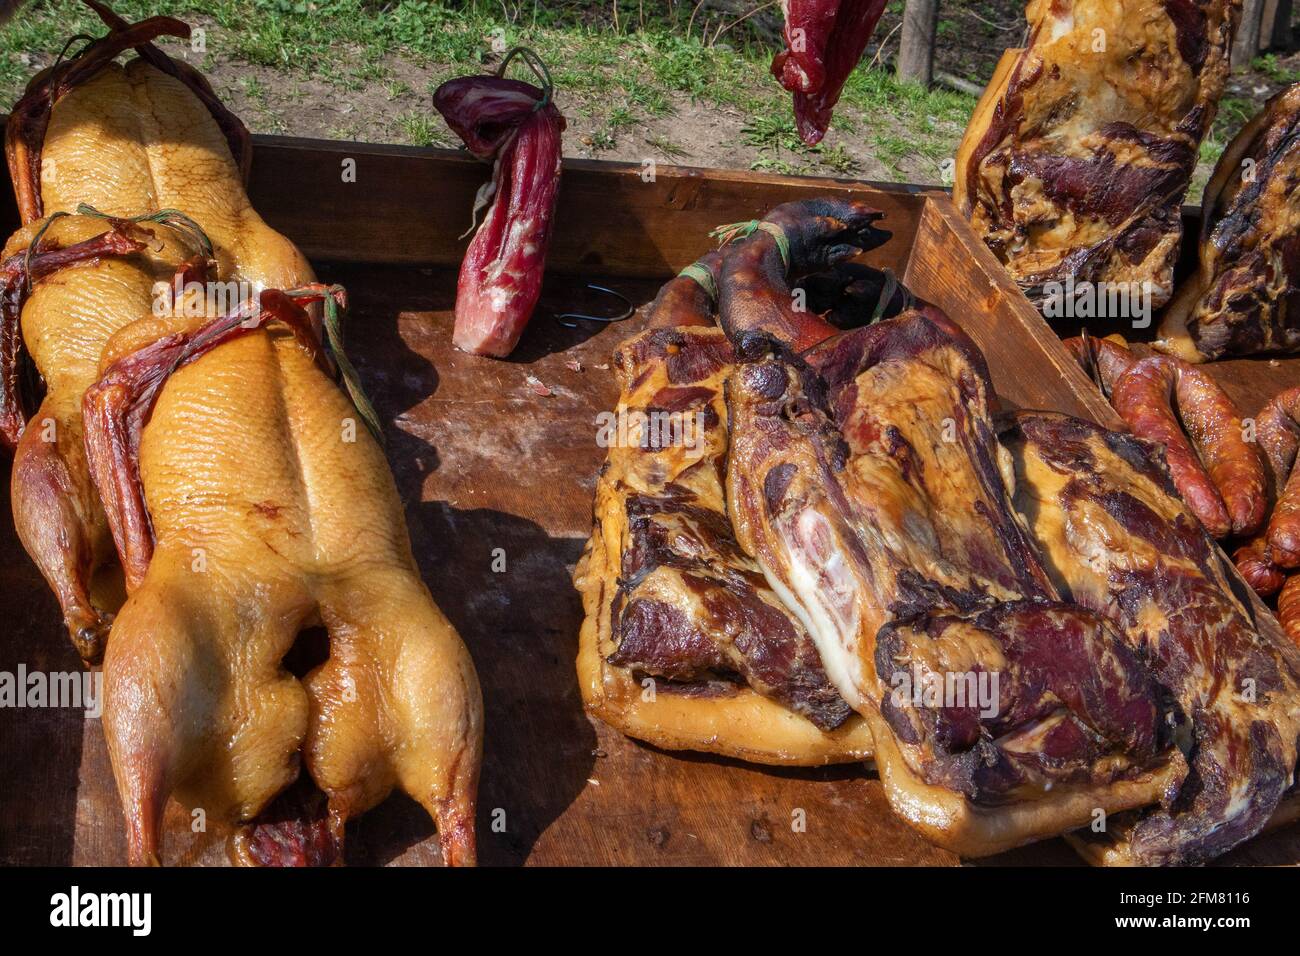 Pocas carnes ahumadas rústicas artesanales, pollo y jamón de cerdo en la tienda de comercio justo del pueblo Foto de stock